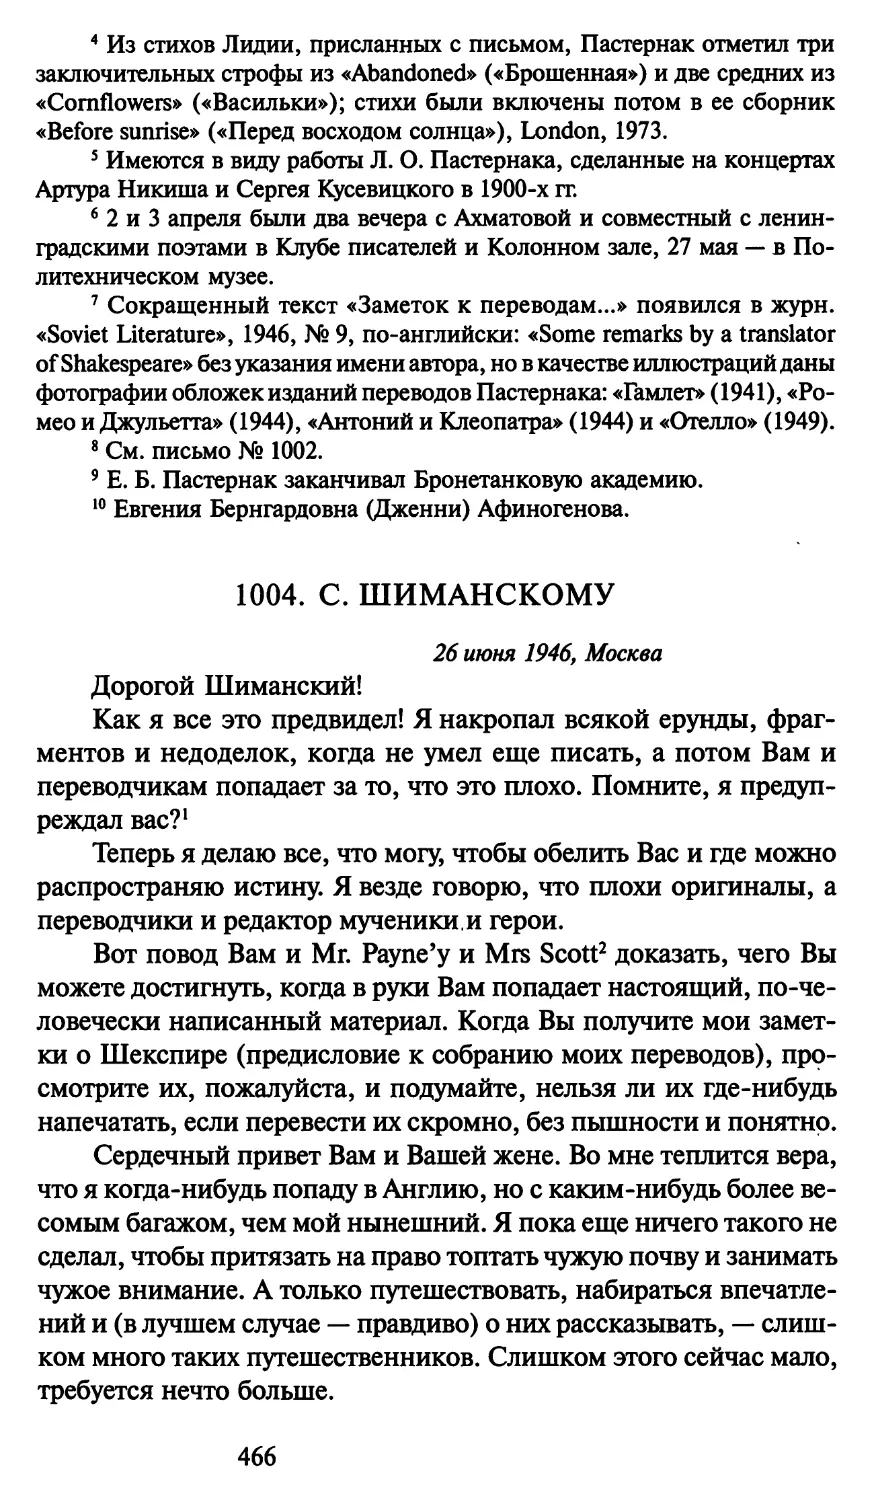 1004. С. Шиманскому 26 июня 1946